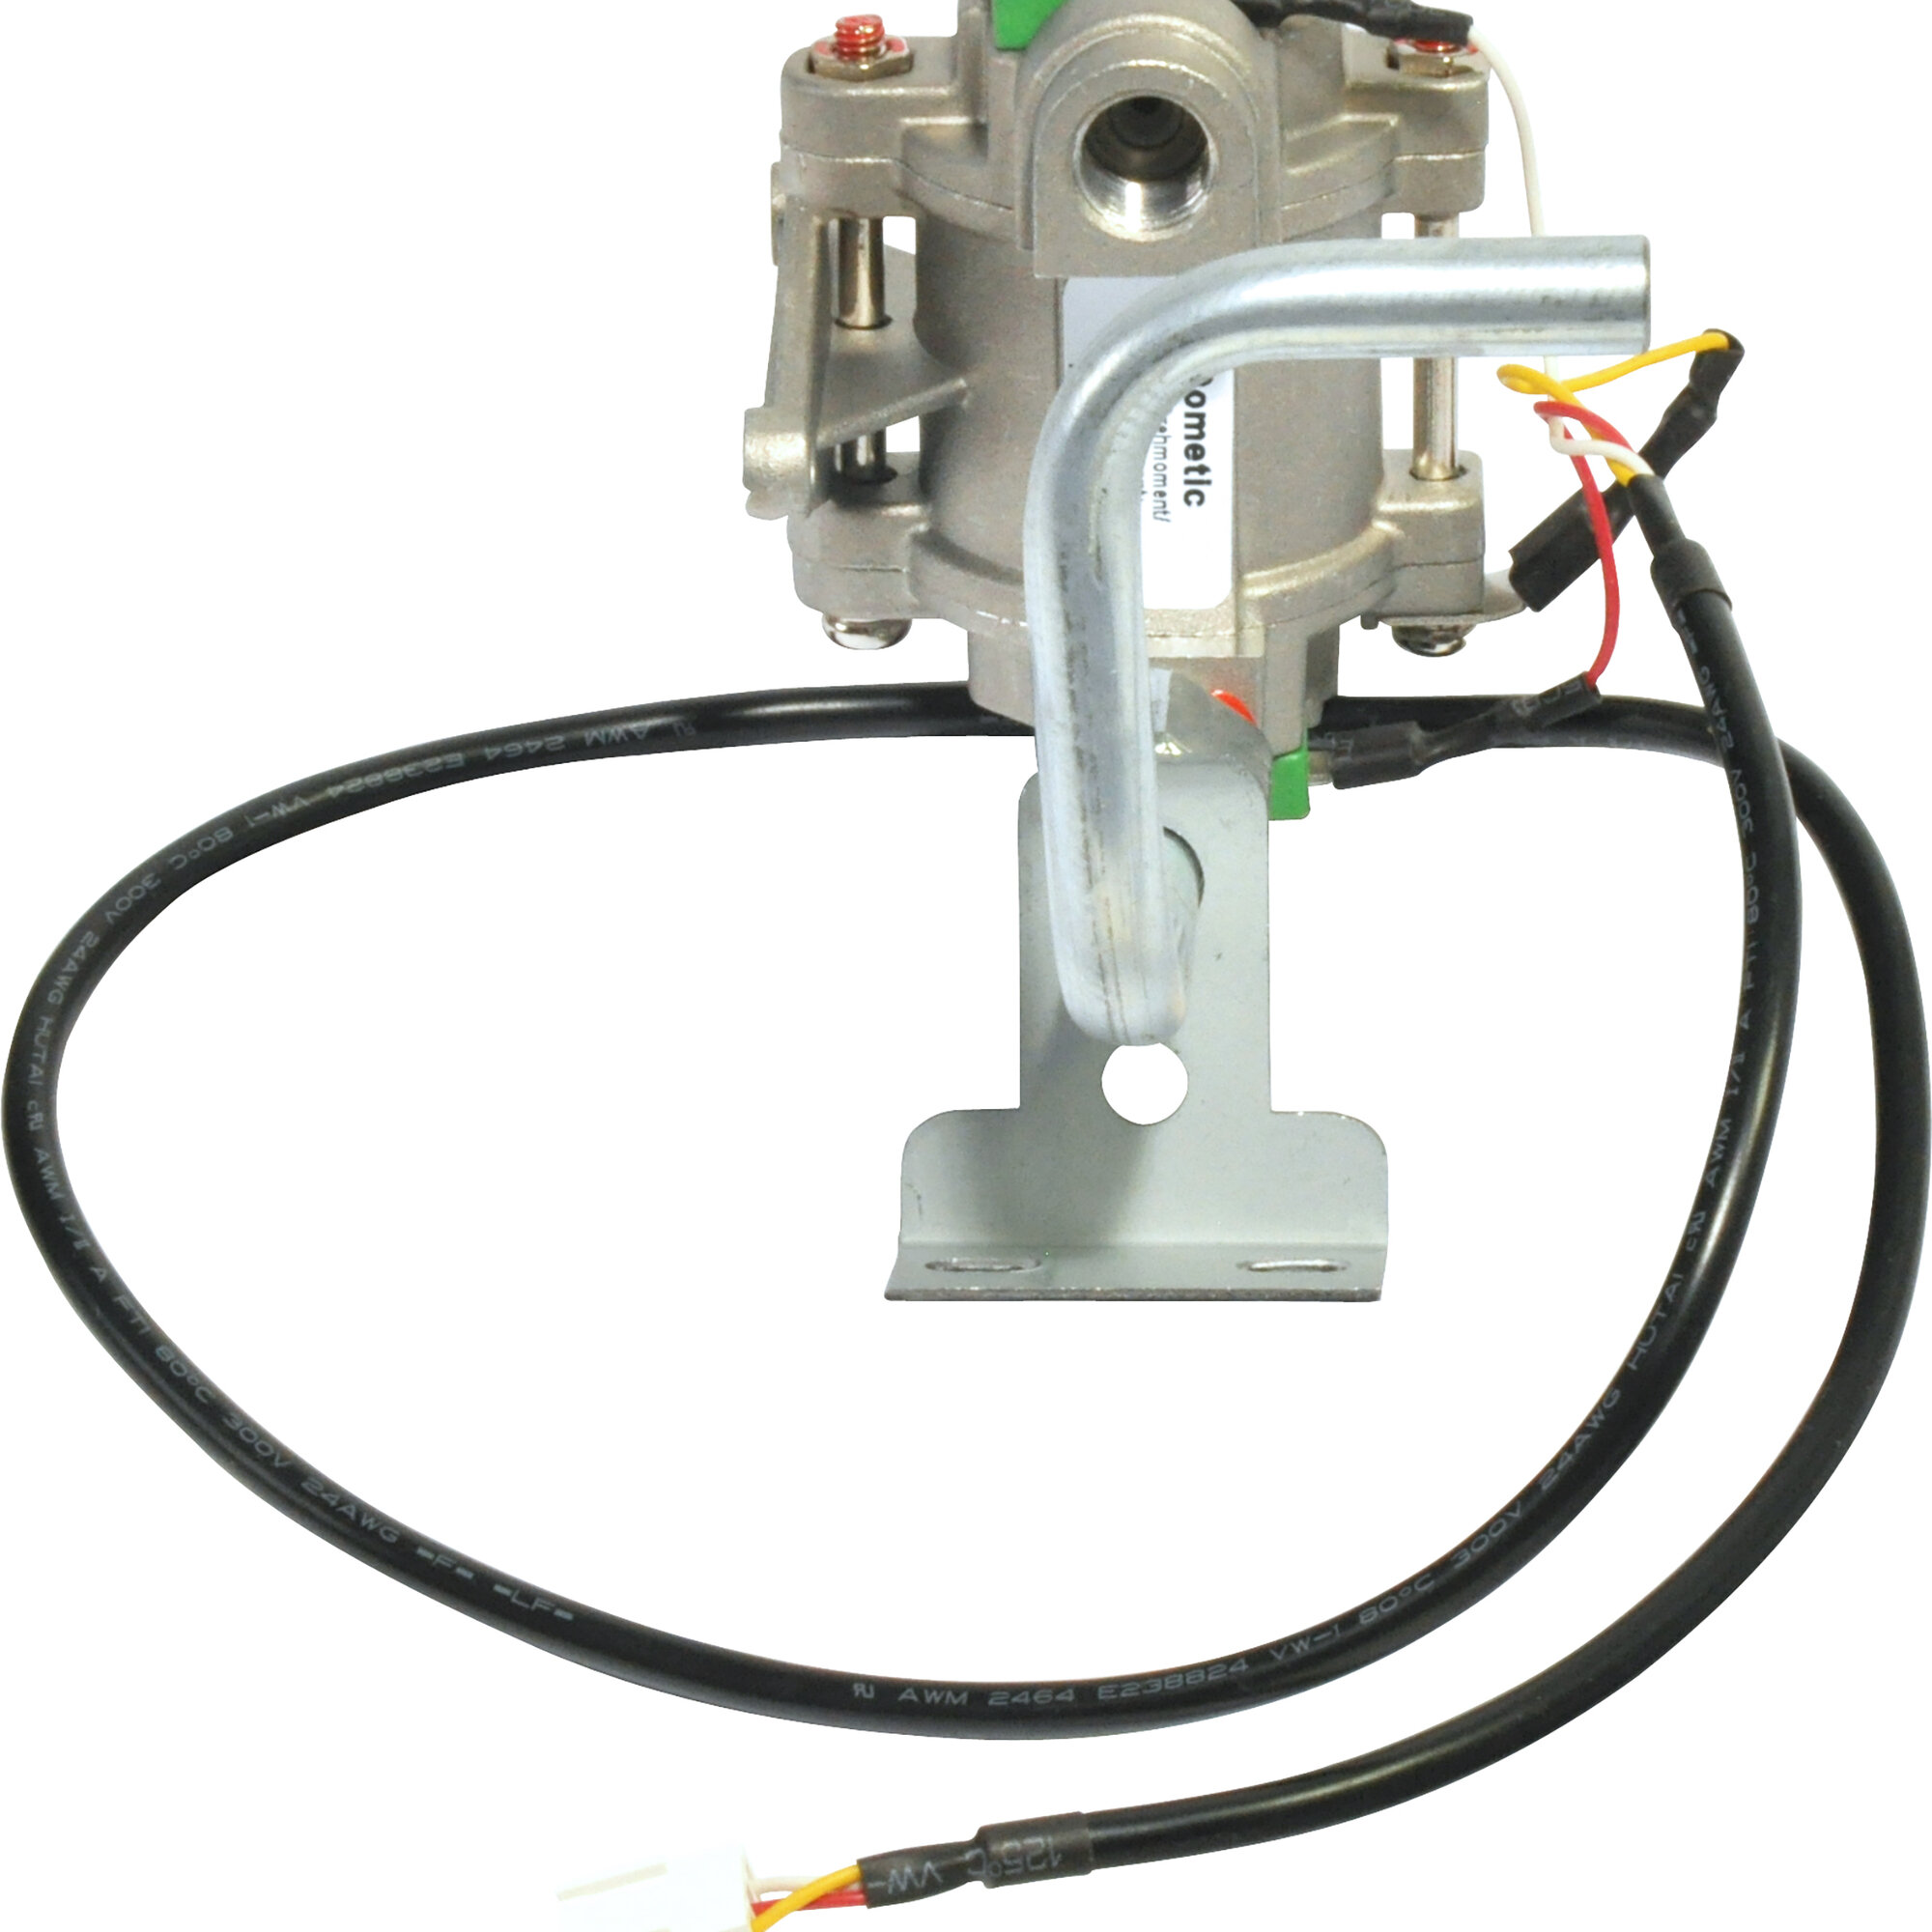 Gasventil mit Gasanschlussrohr für Dometic-Kühlschränke RML 9X31, 9X35